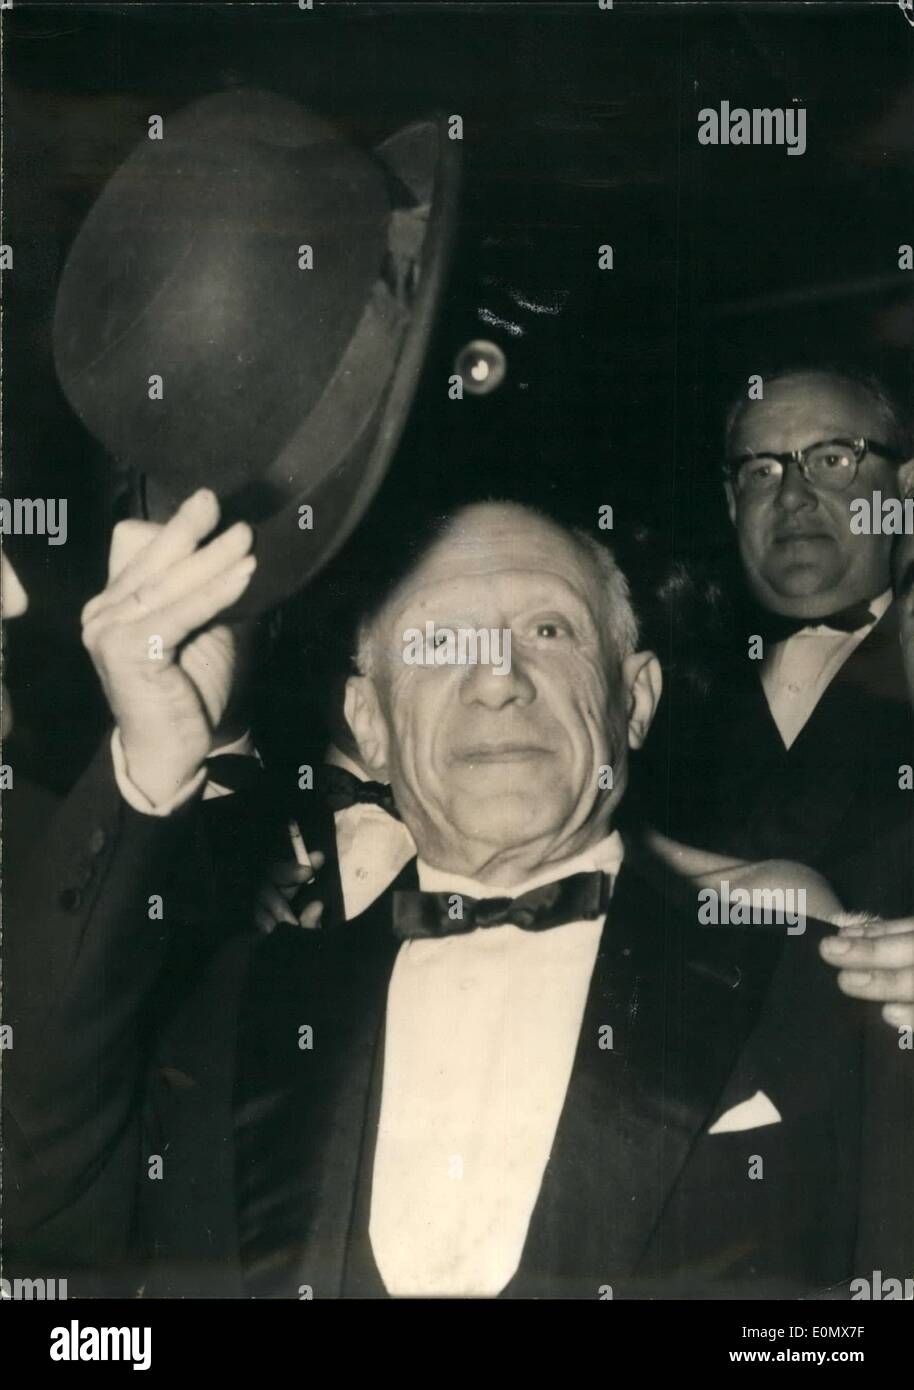 Ottobre 10, 1956 - Picasso 75 anni. La foto mostra una delle più recenti i ritratti del famoso pittore Pablo Picasso che ha festeggiato il suo settantacinquesimo compleanno oggi. Foto Stock